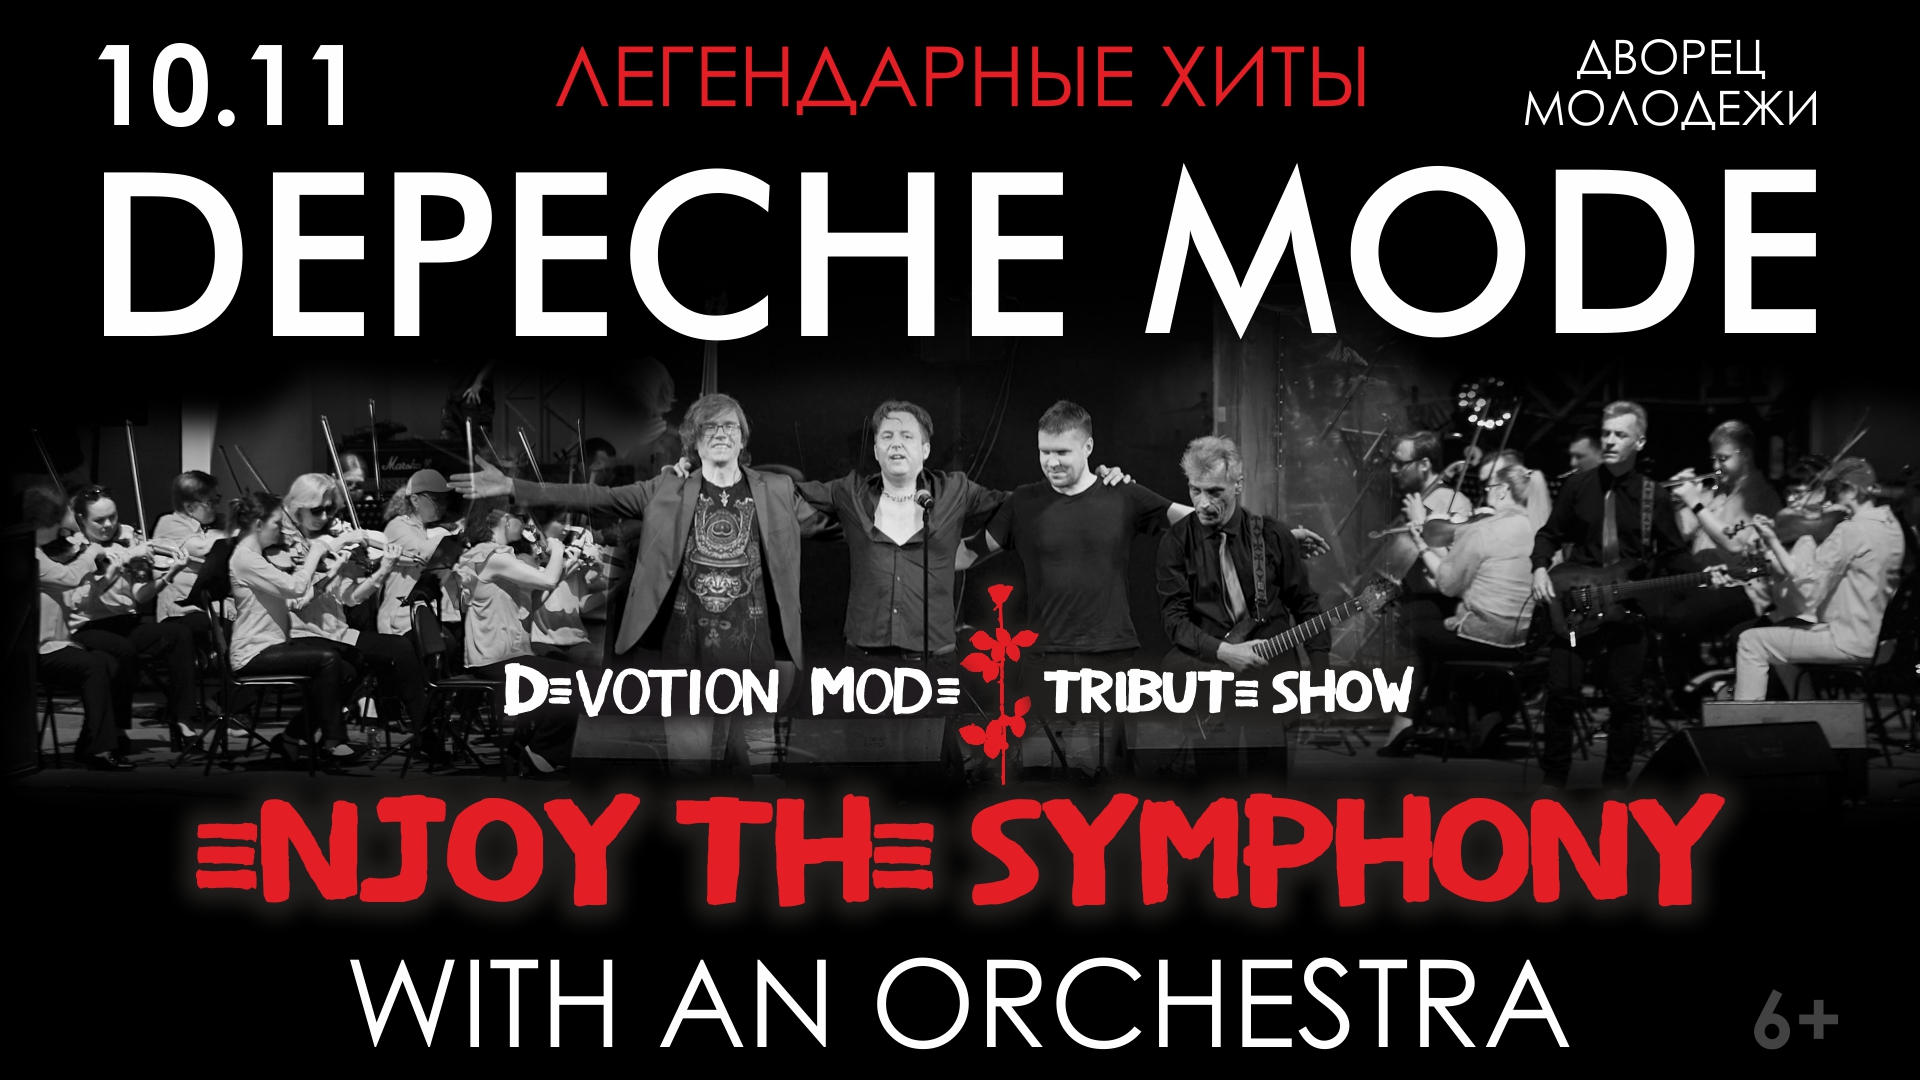 Легендарные хиты DEPECHE MODE с симфоническим оркестром «ENJOY THE SYMPHONY» TRIBUTE SHOW